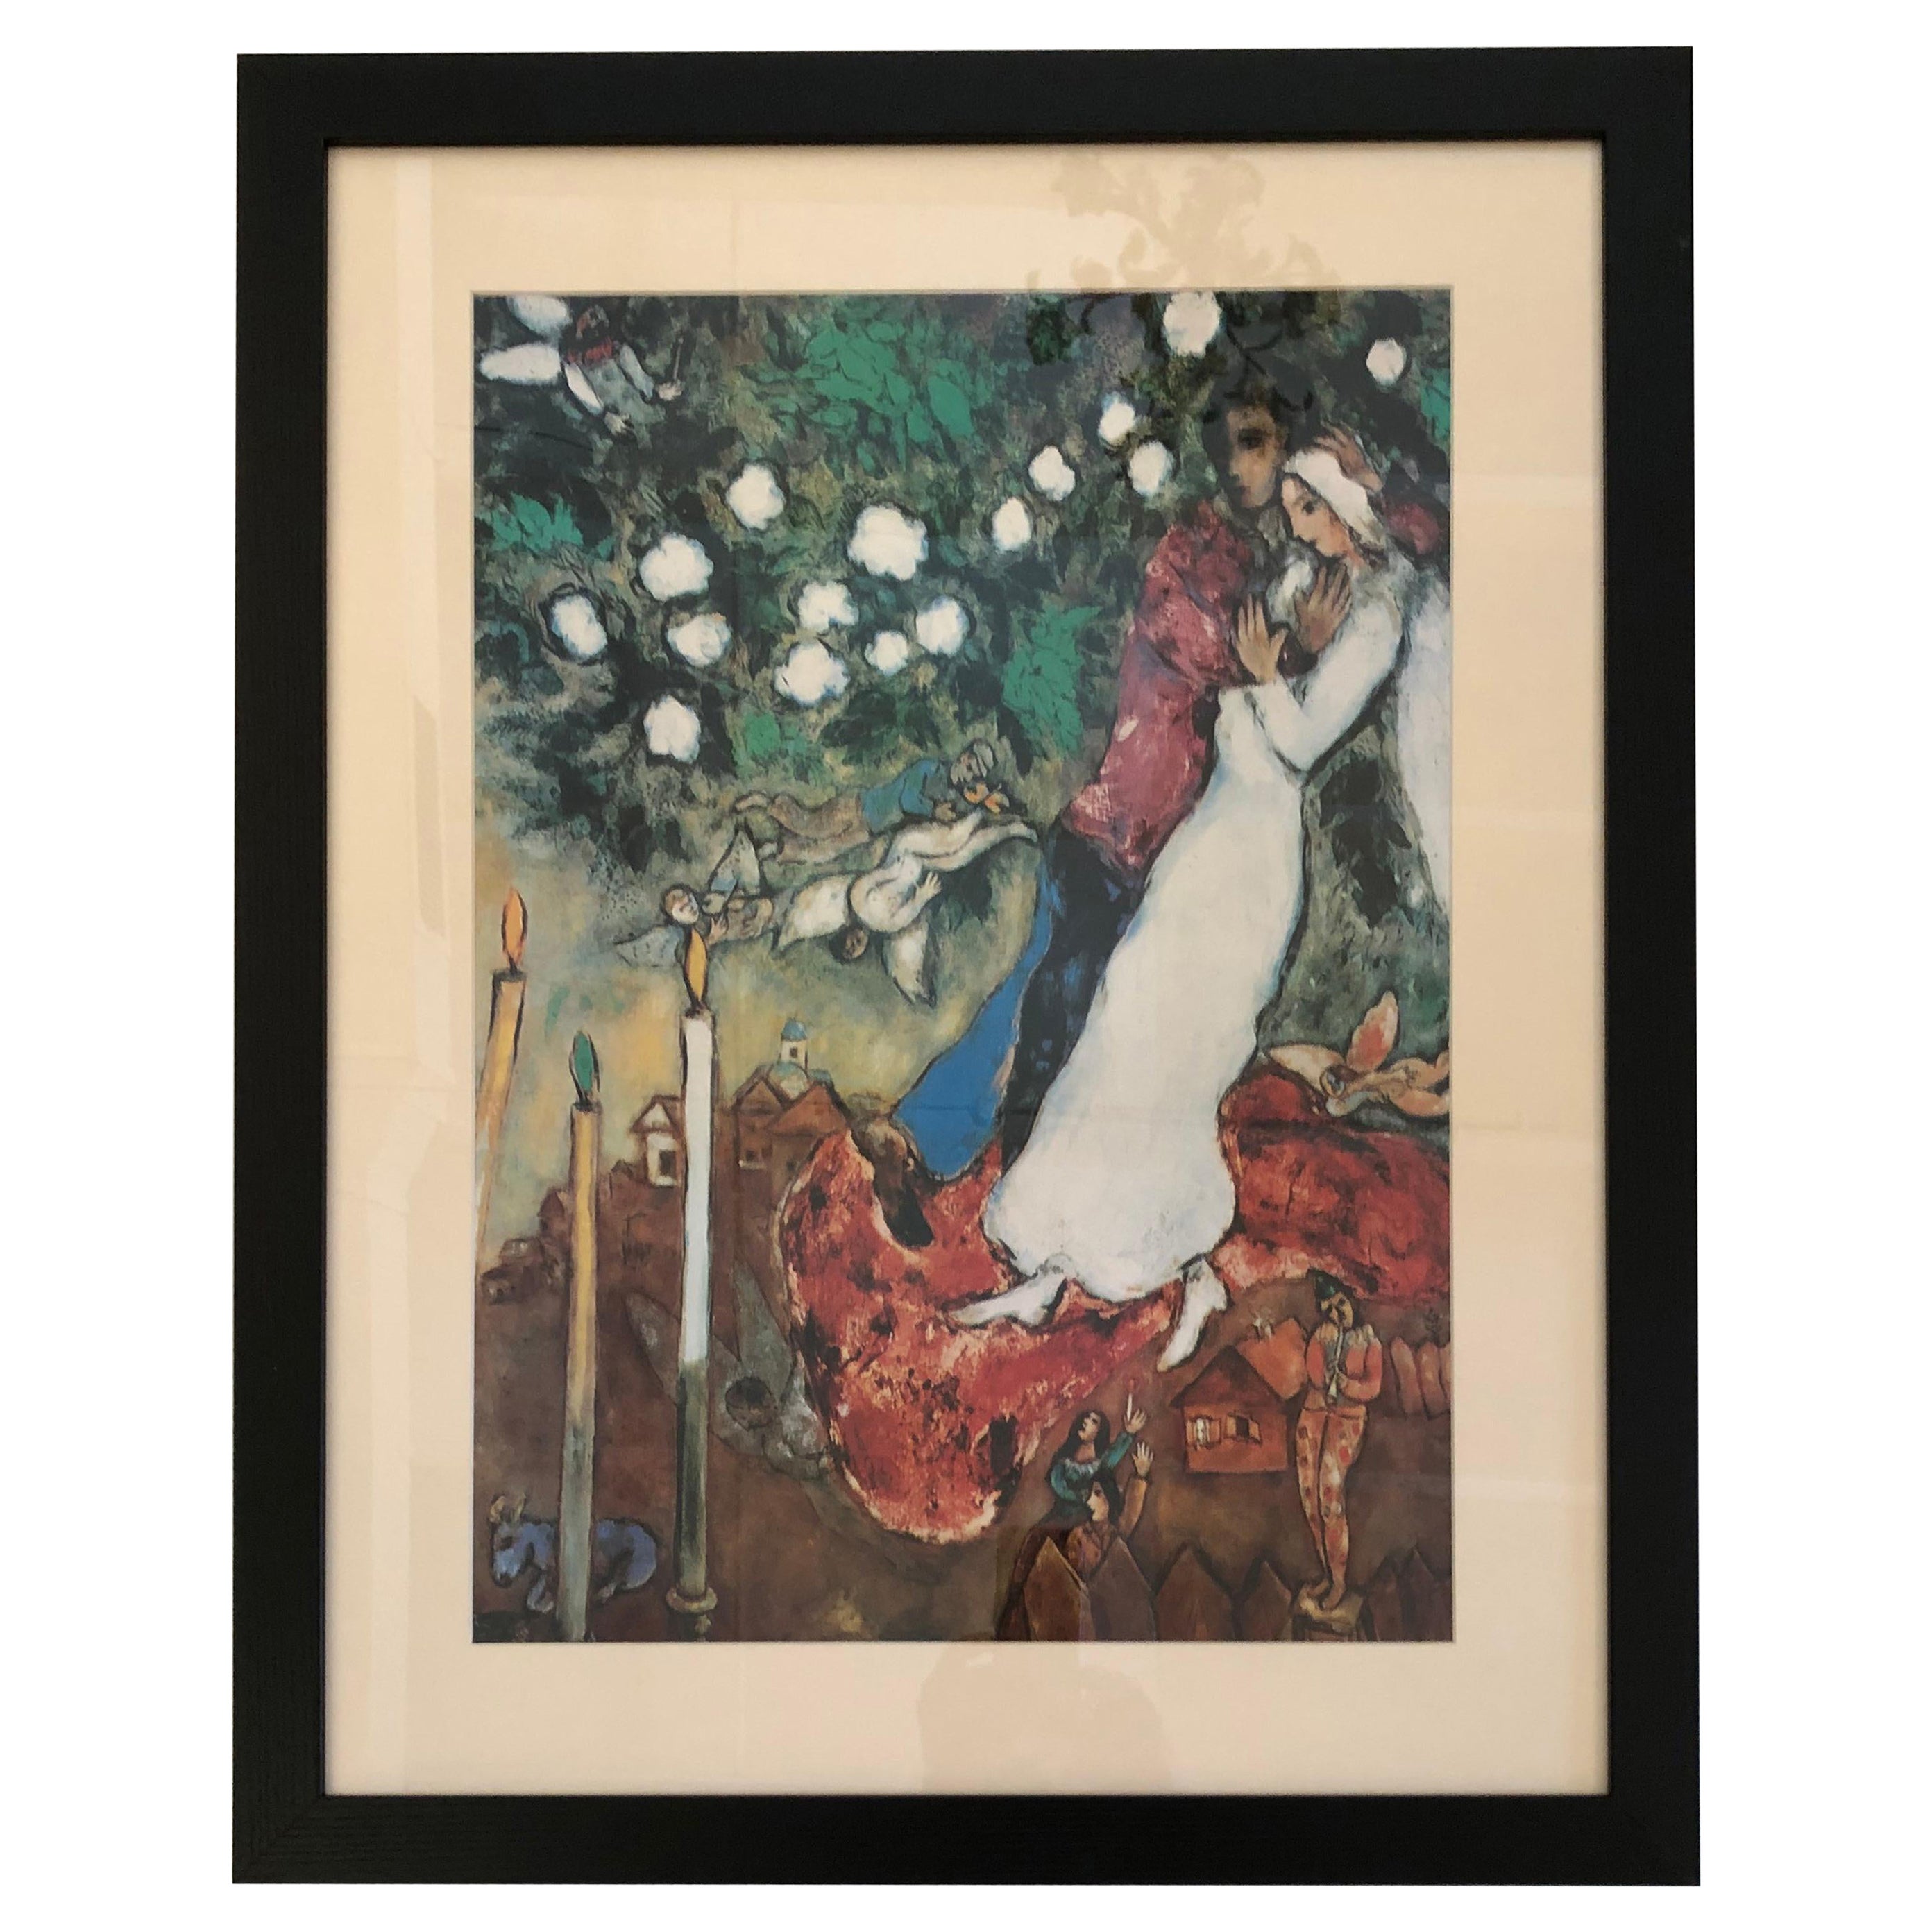 Lithographie de Chagall « The Three Candles » (les trois bougies) représentant une peinture célèbre de Chagall